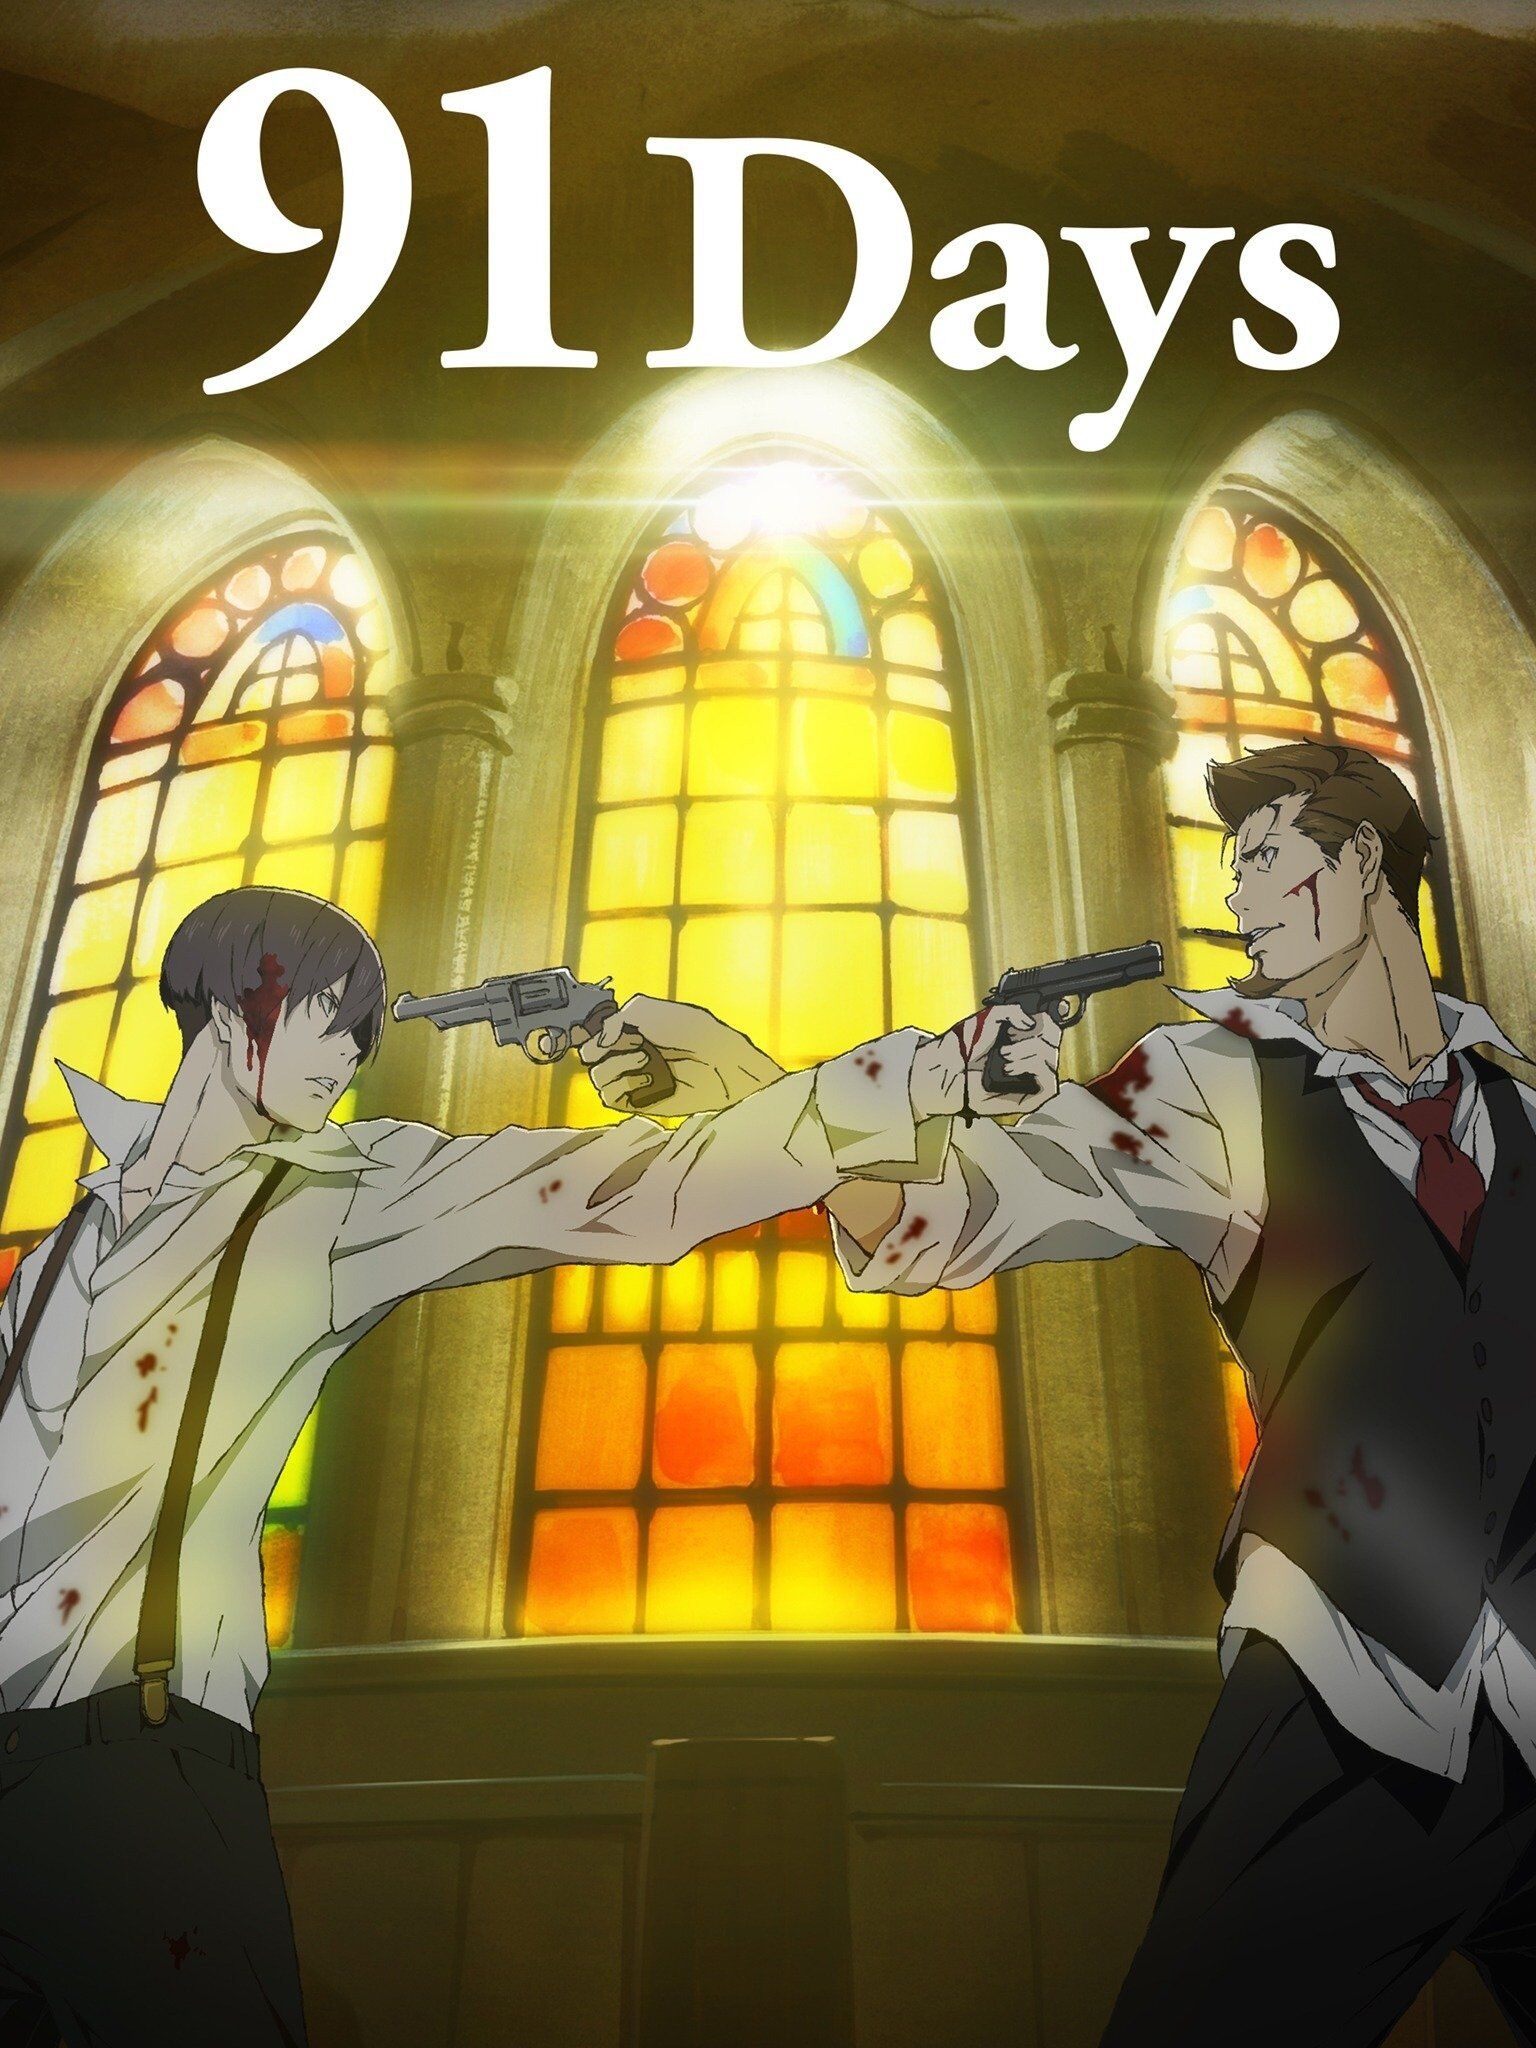 Angelo - 91 Days  Anime, 91 days, Anime shows